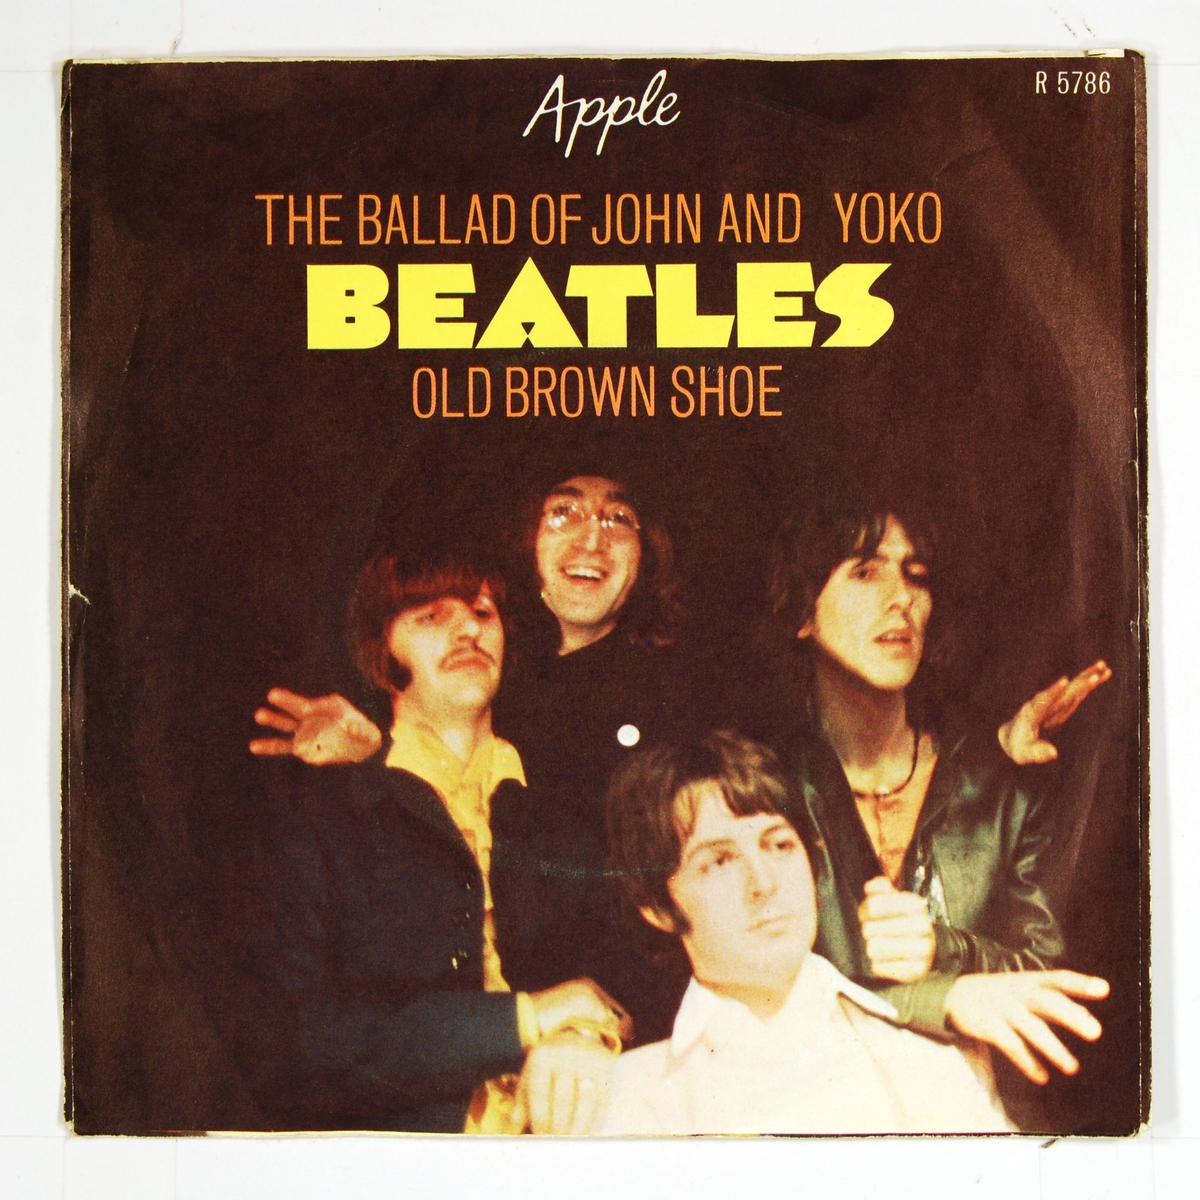 Fotografi av "The Beatles" på coveret. Plateetiketten viser et grønt eple på A-siden og et delt eple på B-siden.